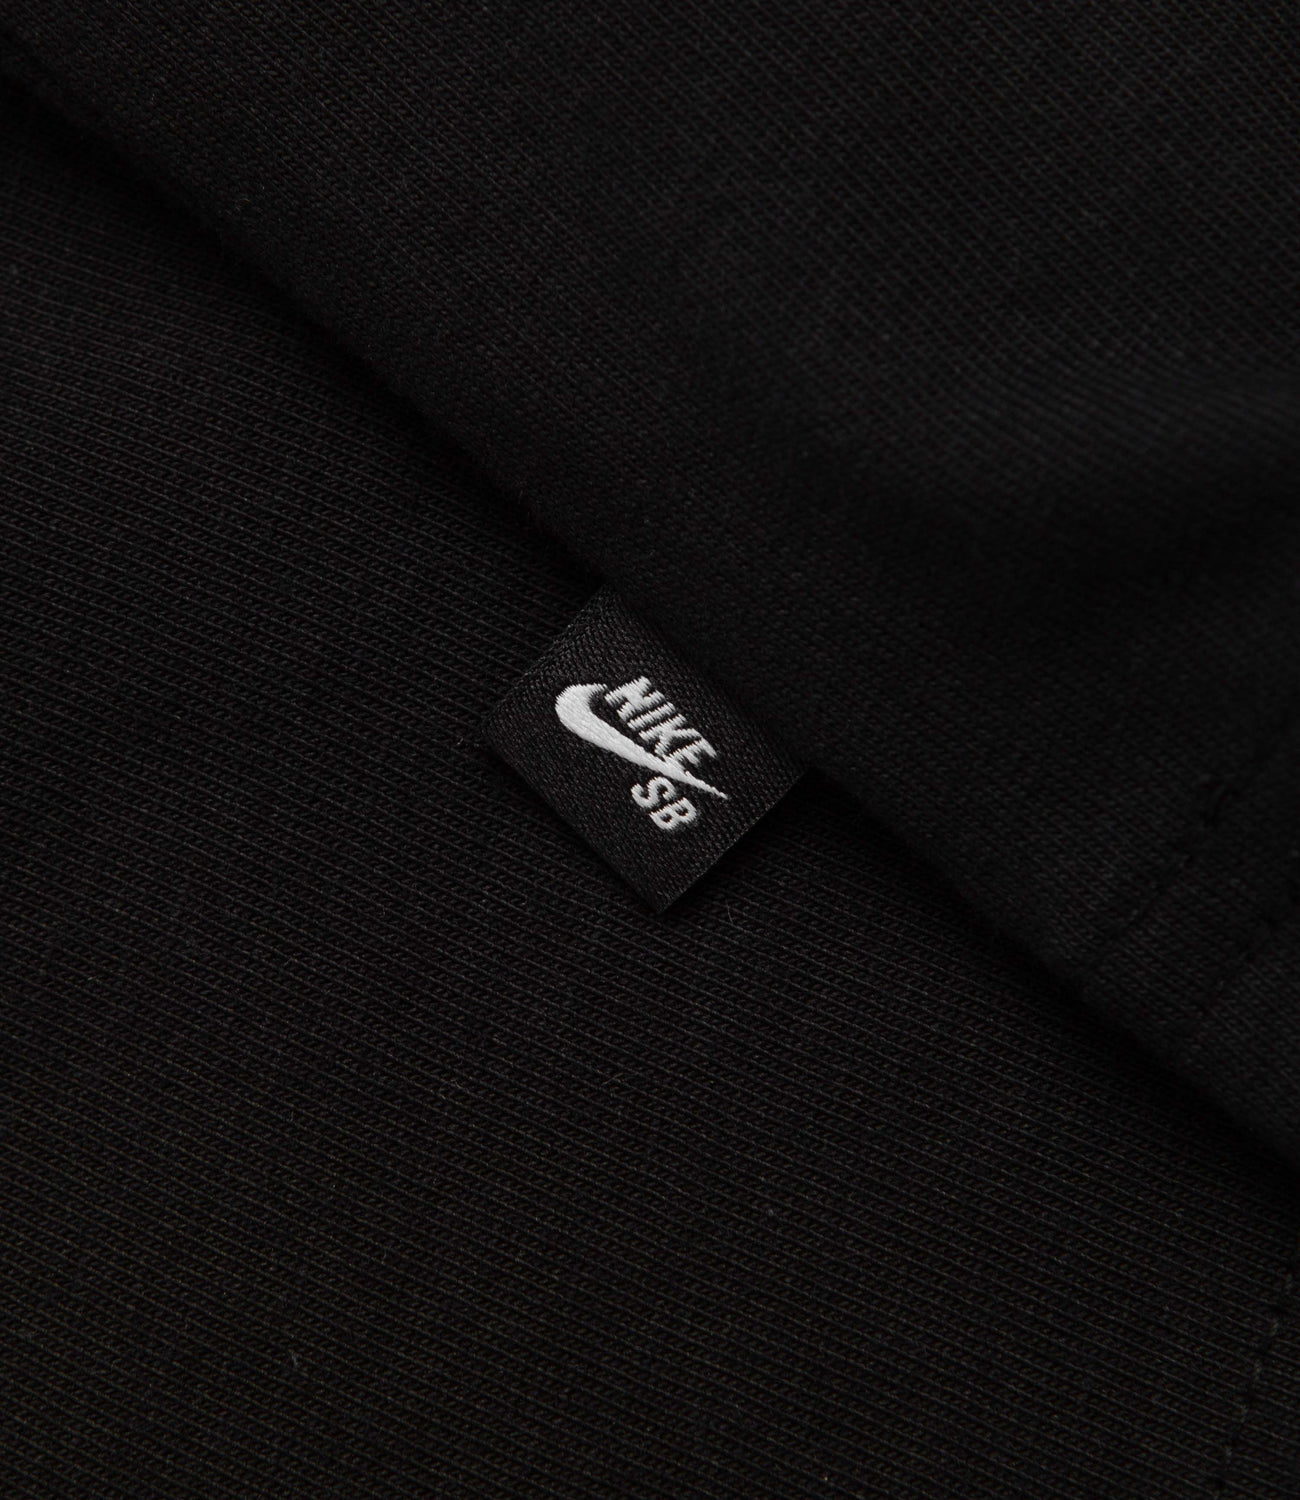 Nike SB Large Logo T-Shirt - Black / White | Flatspot